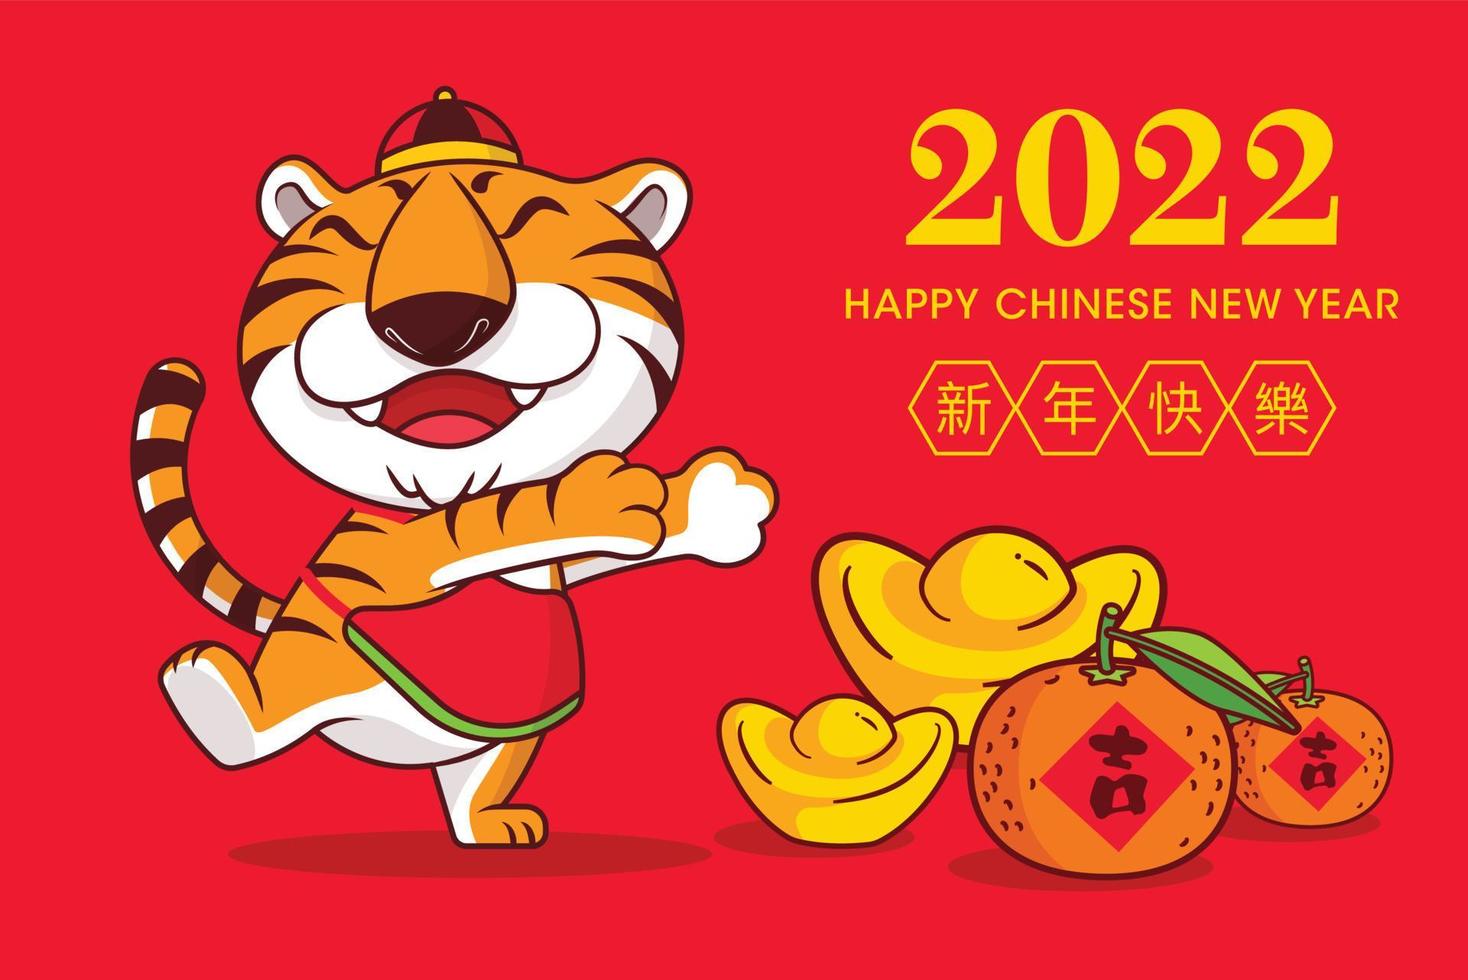 4464338-2022-joyeux-nouvel-an-chinois-carte-de-voeux-avec-dessin-anime-tigre-mignon-lingot-d-or-et-mandarine-au-sol-avec-des-souhaits-du-nouvel-an-chinois-2022-vectoriel.jpg